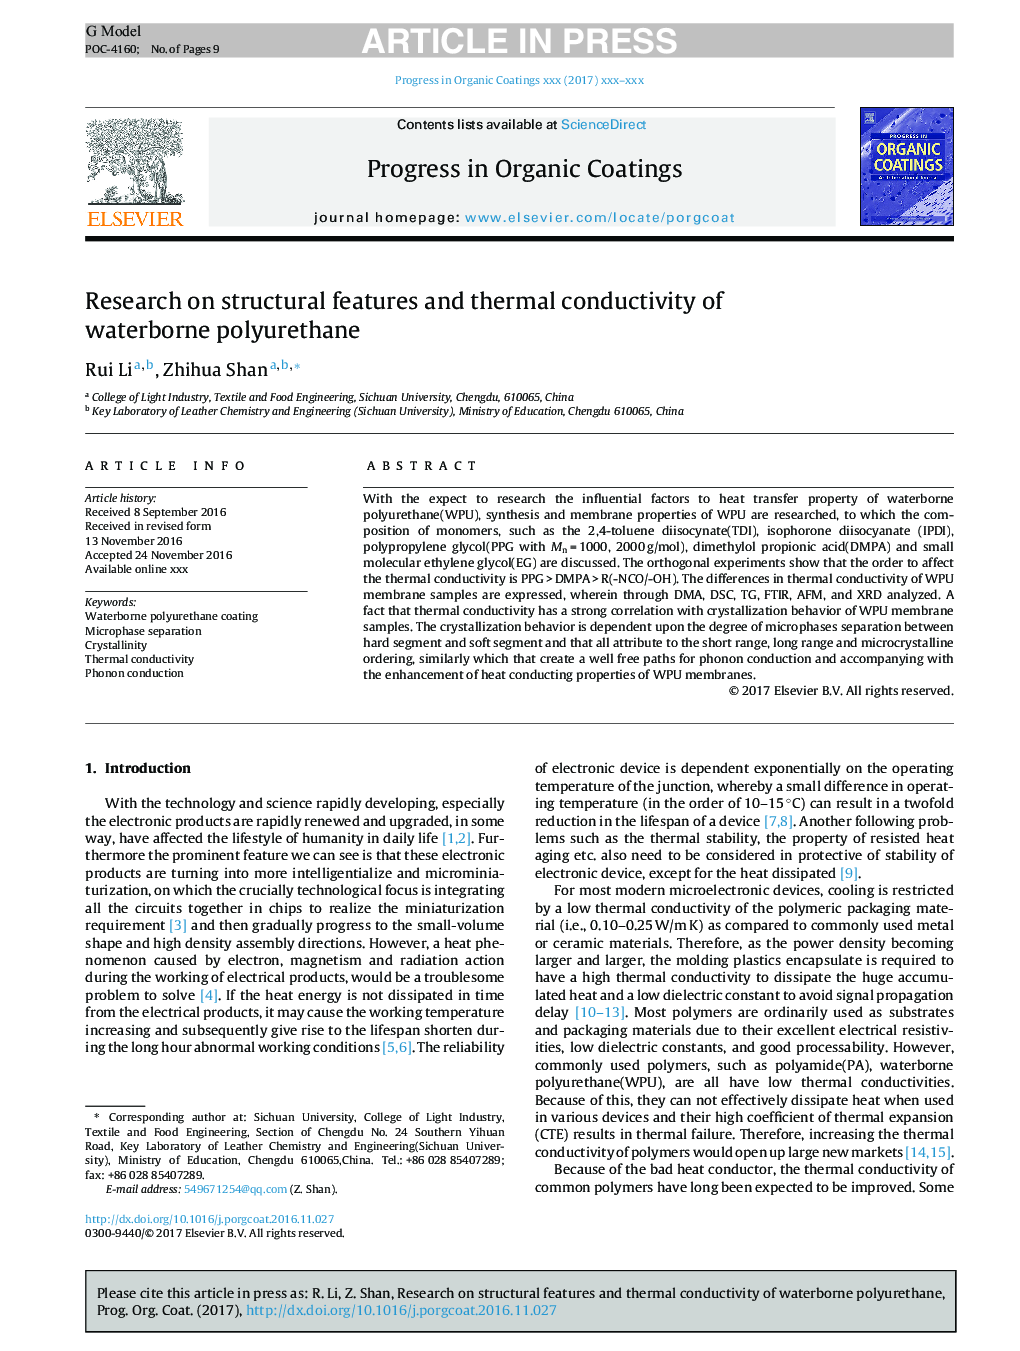 تحقیق در مورد ویژگی های ساختاری و هدایت حرارتی پلی اورتان آب 